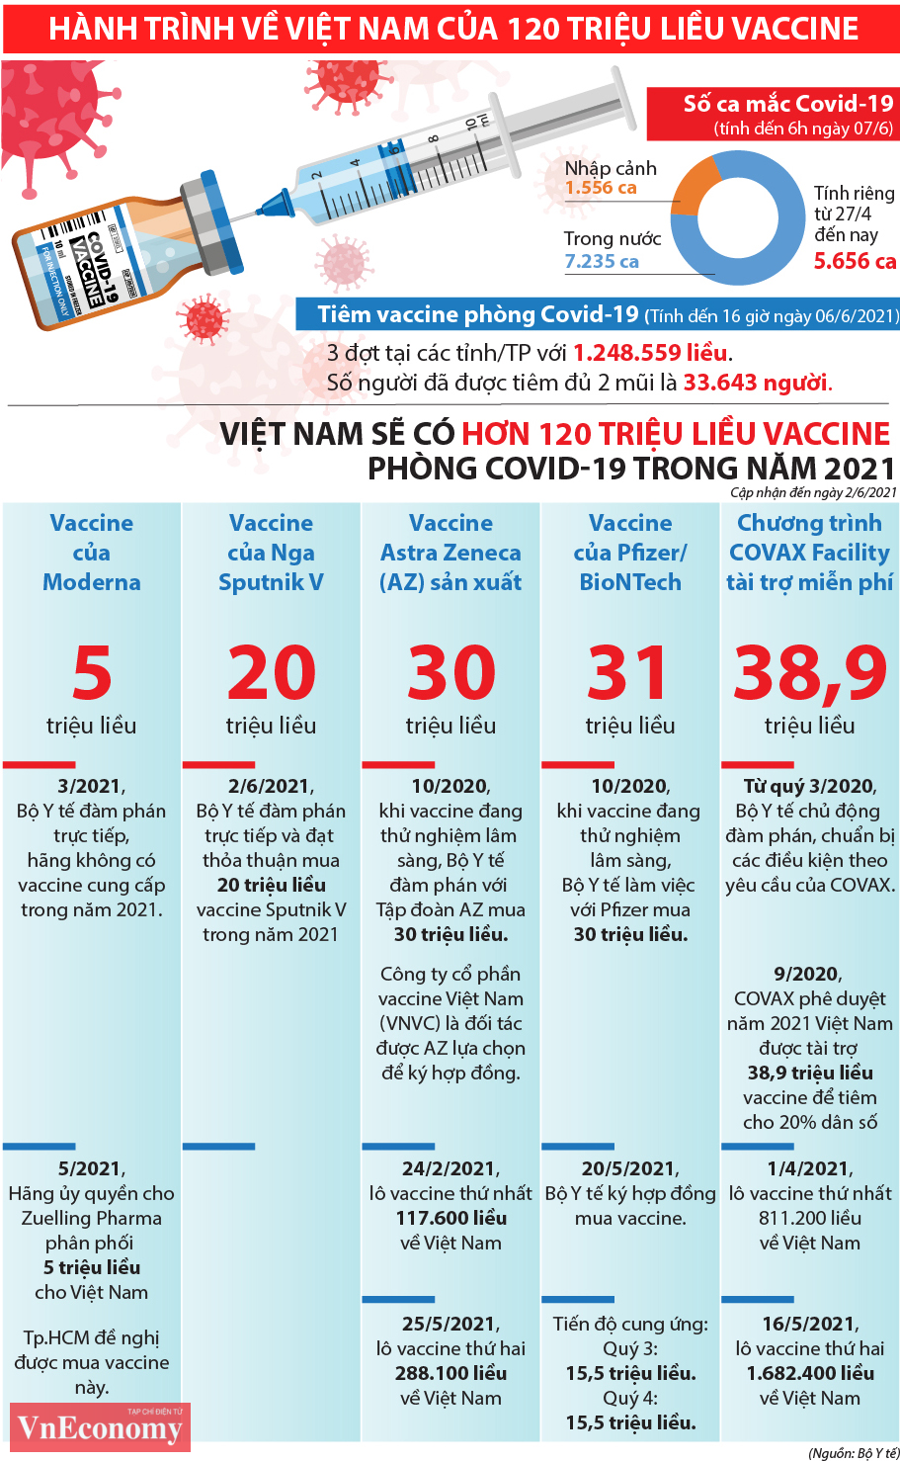 Hành trình về Việt Nam của 120 triệu liều vaccine Covid-19 - Ảnh 1